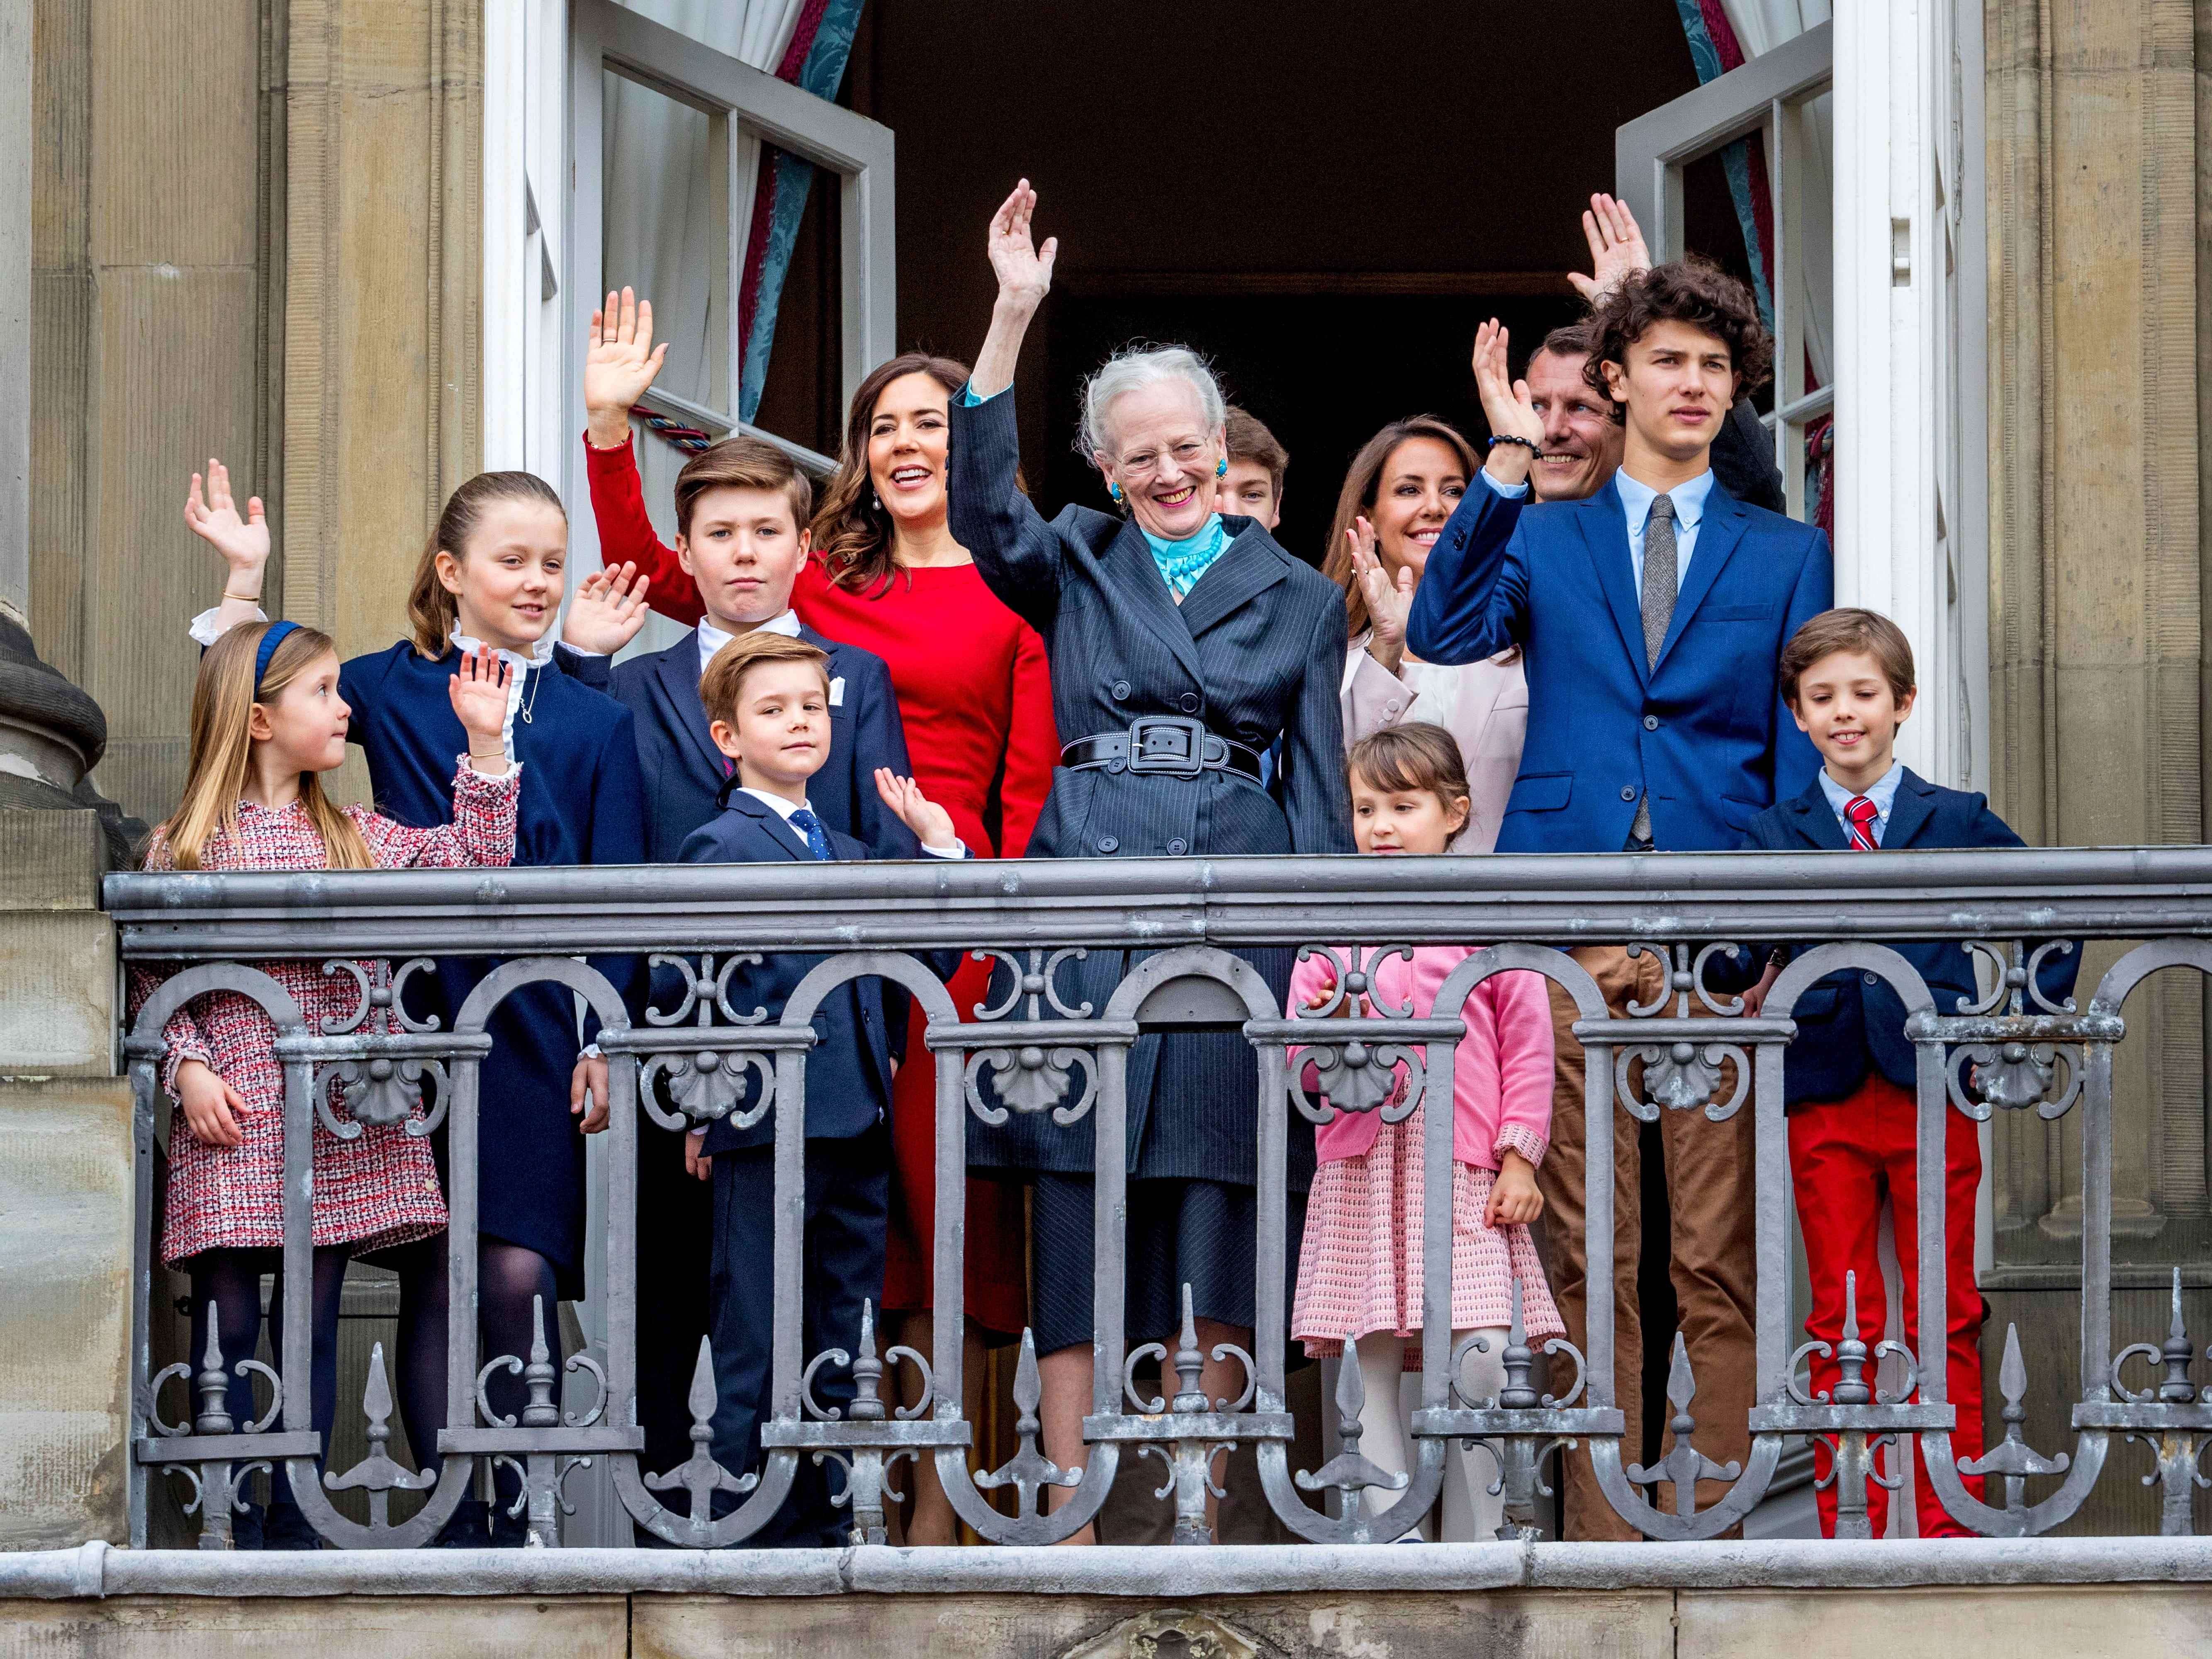 Königin Margrethe von Dänemark, Kronprinzessin Mary von Dänemark, Prinz Christian von Dänemark, Prinzessin Isabella von Dänemark, Prinz Vincent von Dänemark, Prinzessin Josephine, Prinz Joachim von Dänemark, Prinzessin Marie von Dänemark, Prinz Nikolai von Dänemark, Prinz Felix von Dänemark, Prinz Henrik von Dänemark und Prinzessin Athena von Dänemark im Jahr 2018.